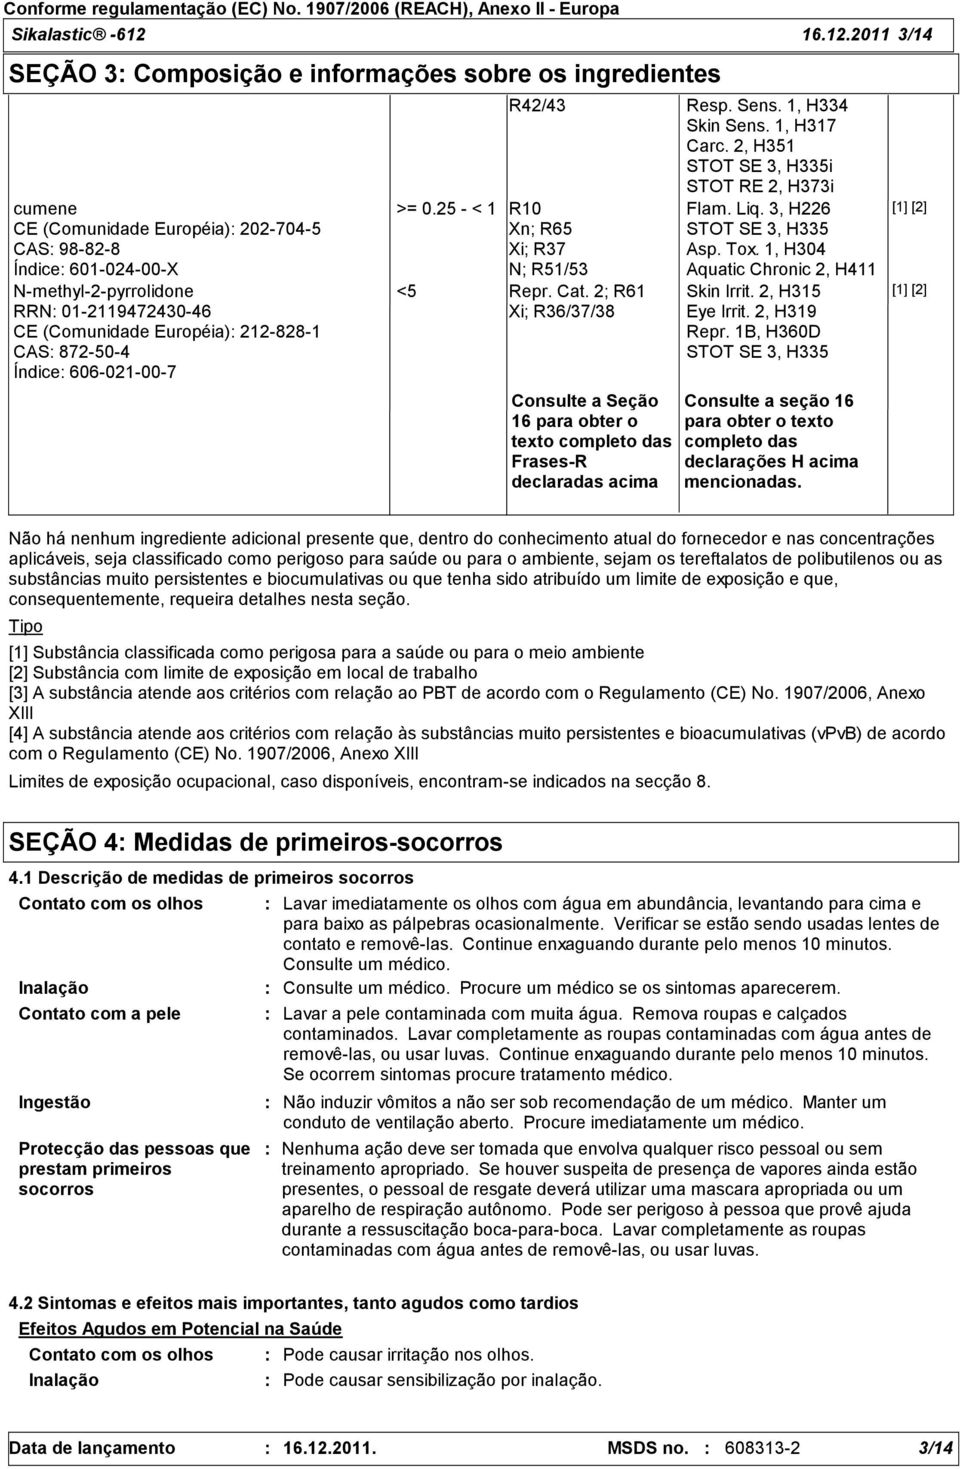 2011 3/14 SEÇÃO 3 Composição e informações sobre os ingredientes cumene CE (Comunidade Européia) 202-704-5 CAS 98-82-8 Índice 601-024-00-X N-methyl-2-pyrrolidone RRN 01-2119472430-46 CE (Comunidade